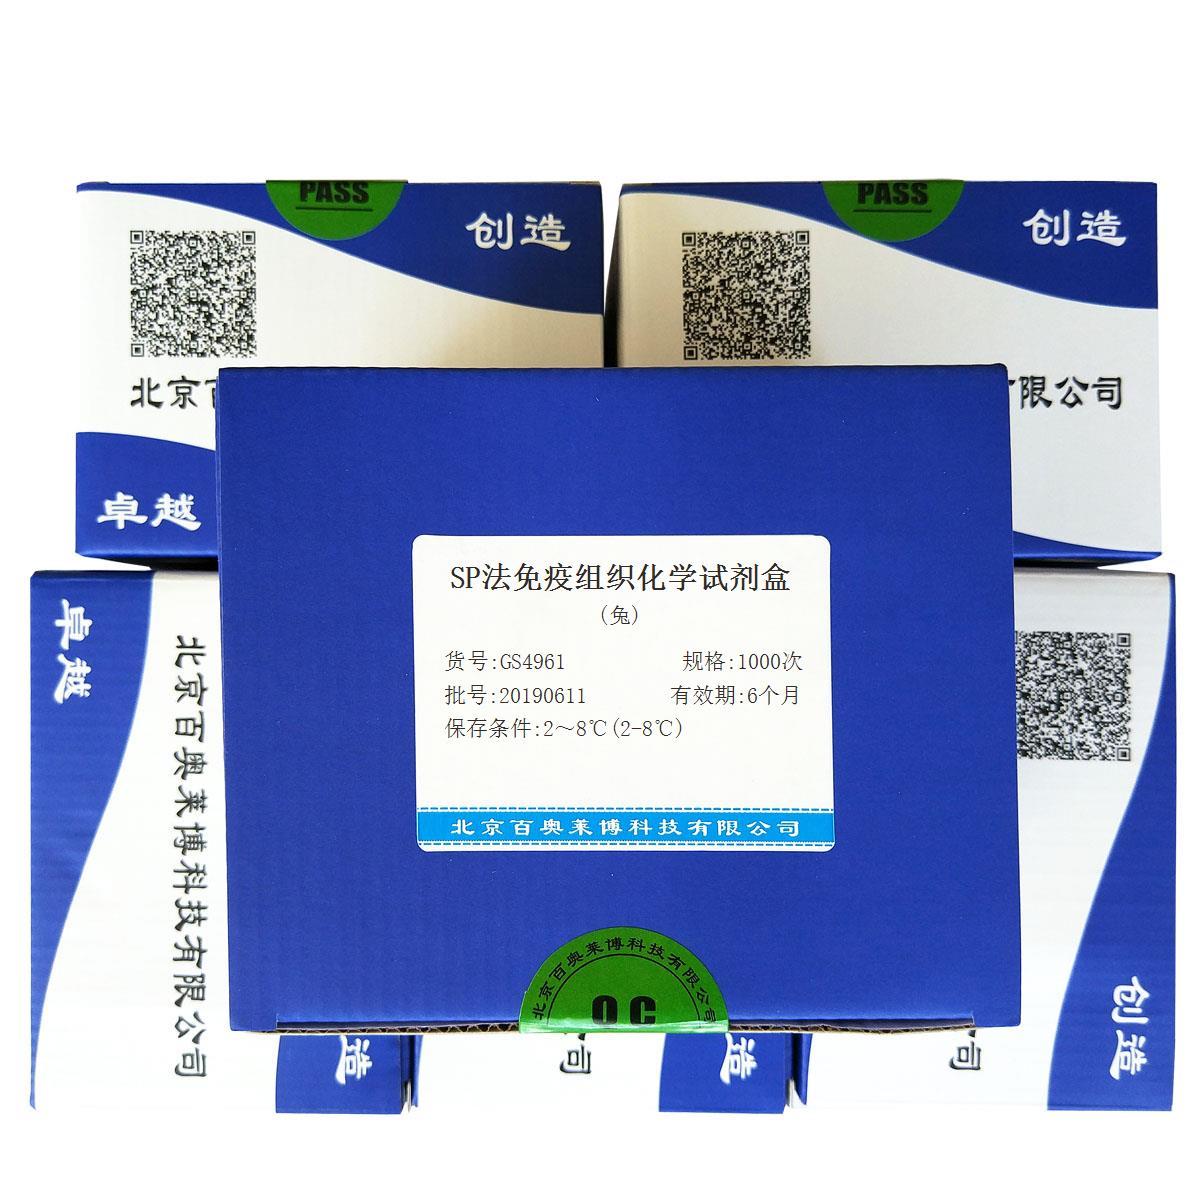 SP法免疫组织化学试剂盒(兔)北京品牌